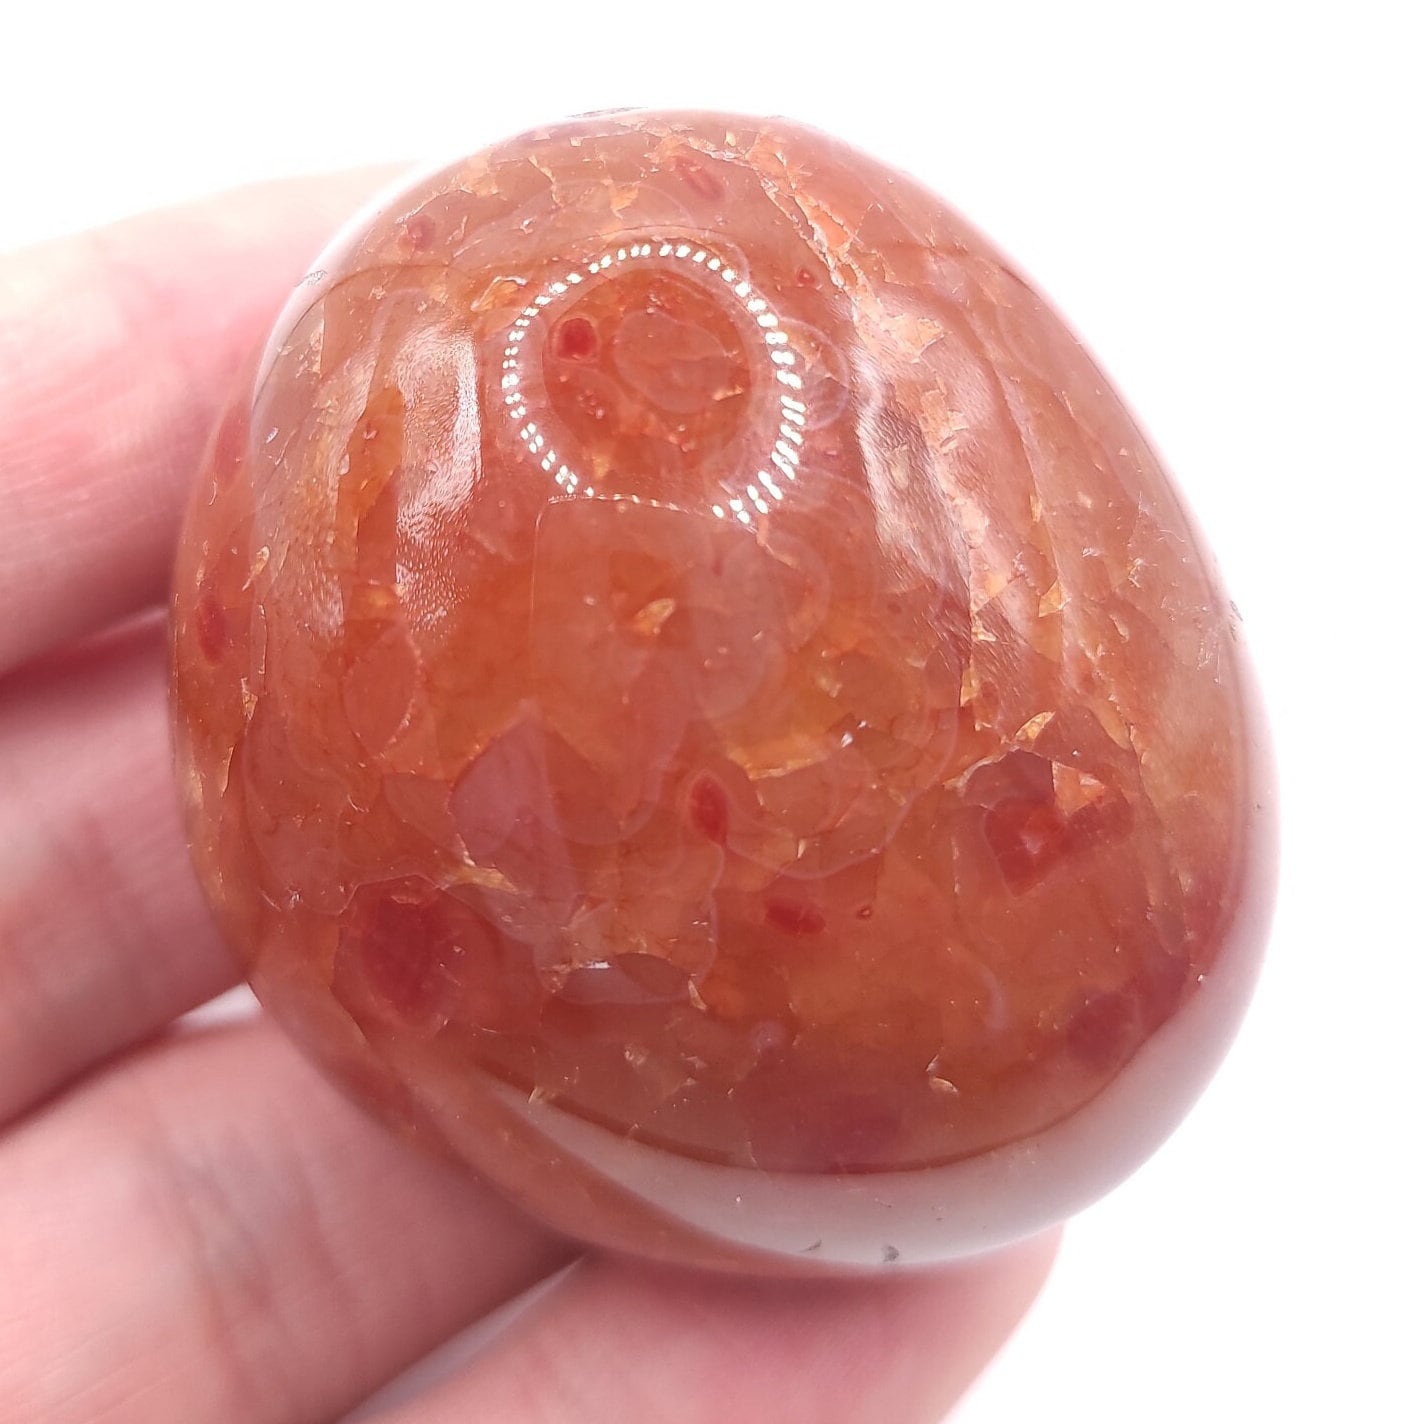 89g Carnelian Palmstone - Large Orange Carnelian Tumbled Stone - Natural Orange Banded Agate from Brazil - Polished Carnelian Crystal Stone